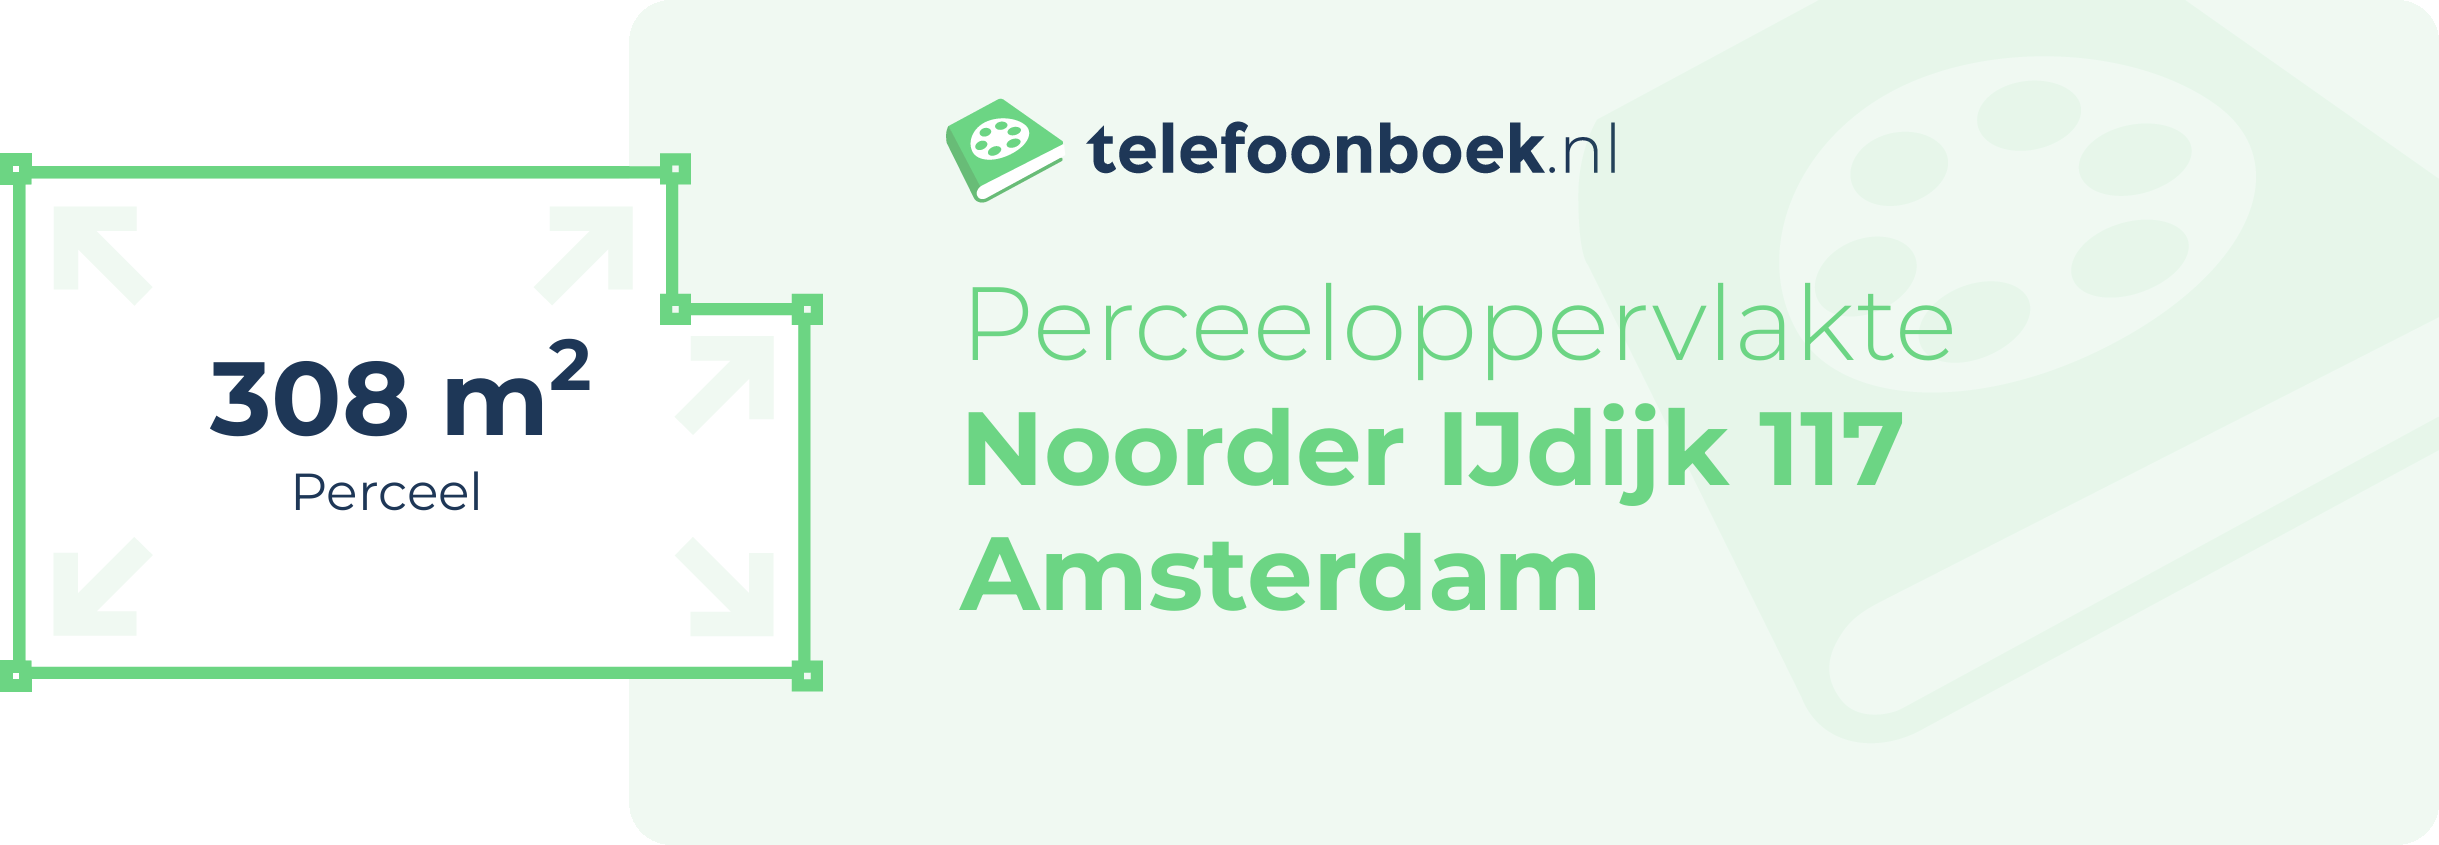 Perceeloppervlakte Noorder IJdijk 117 Amsterdam